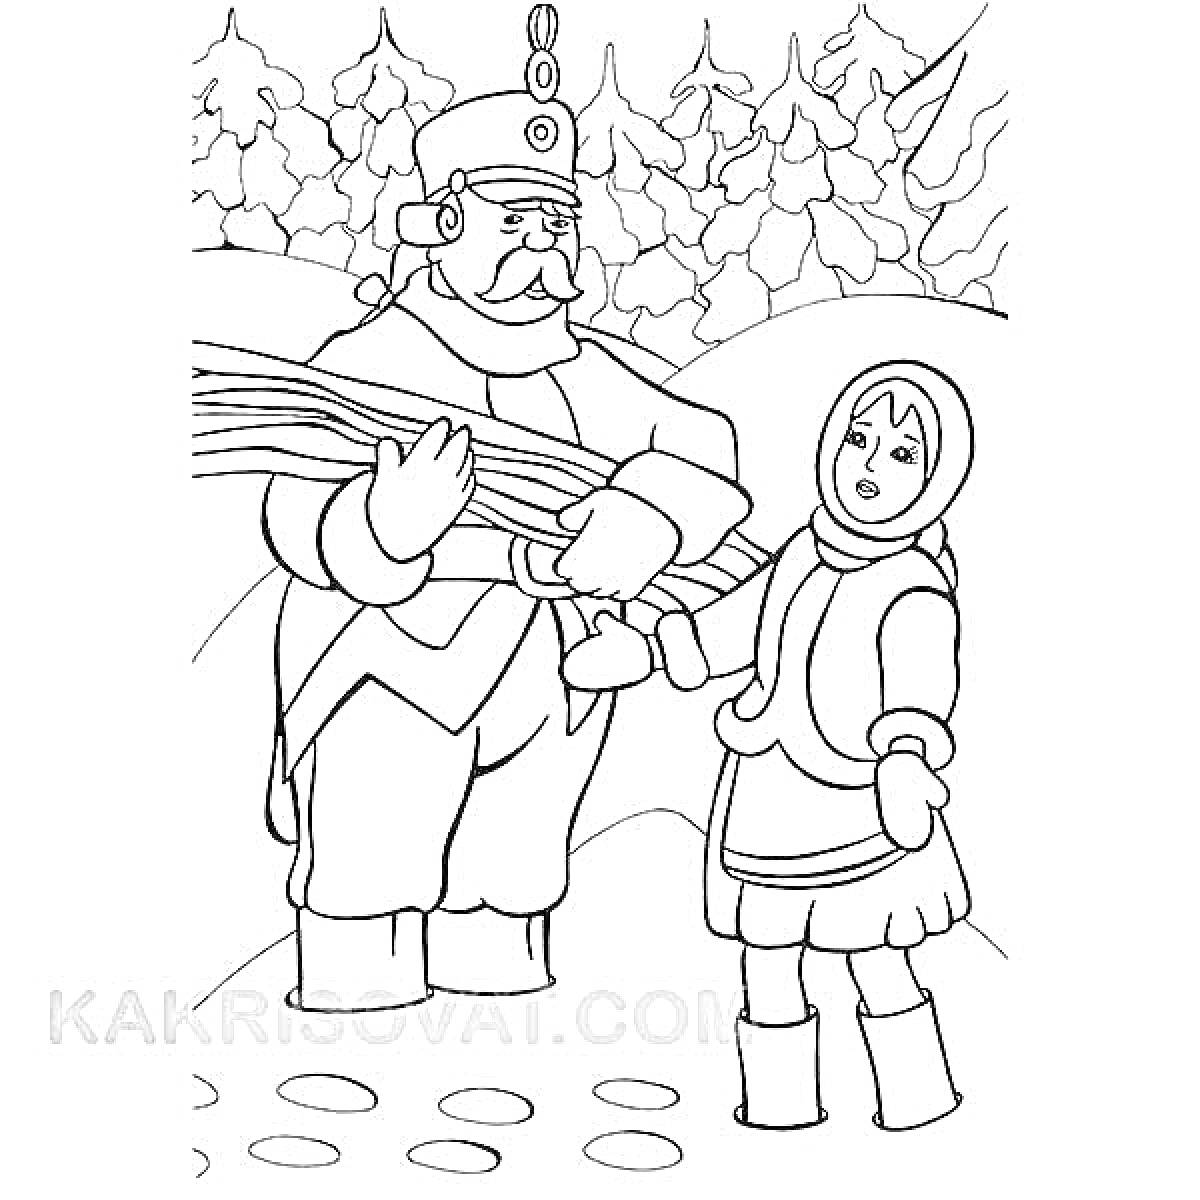 Раскраска Солдат с вязанкой дров и девушка в зимней одежде на фоне зимнего леса